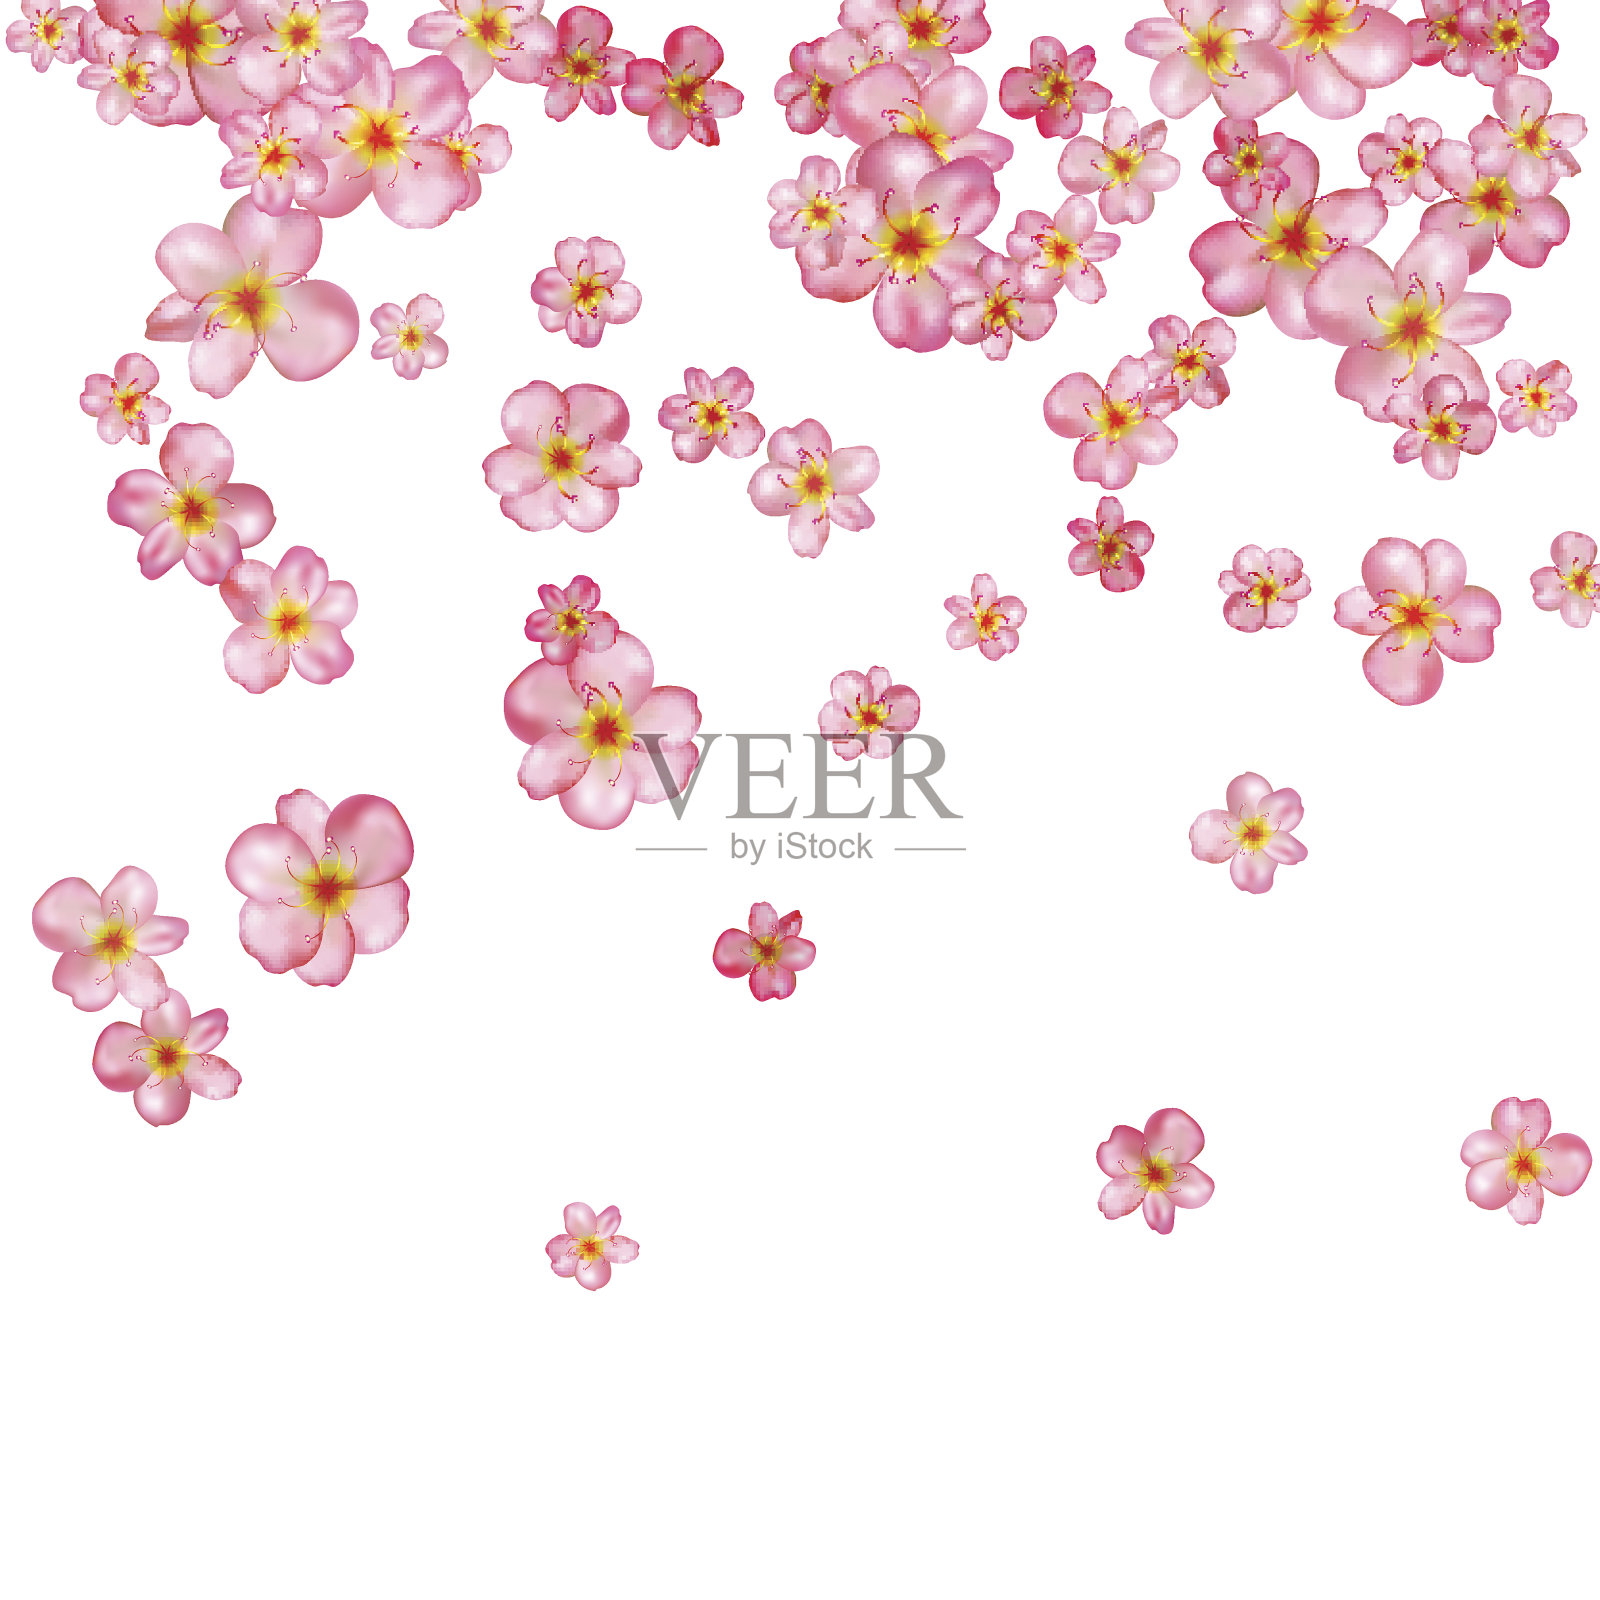 抽象背景与美丽的粉红色樱花。插画图片素材